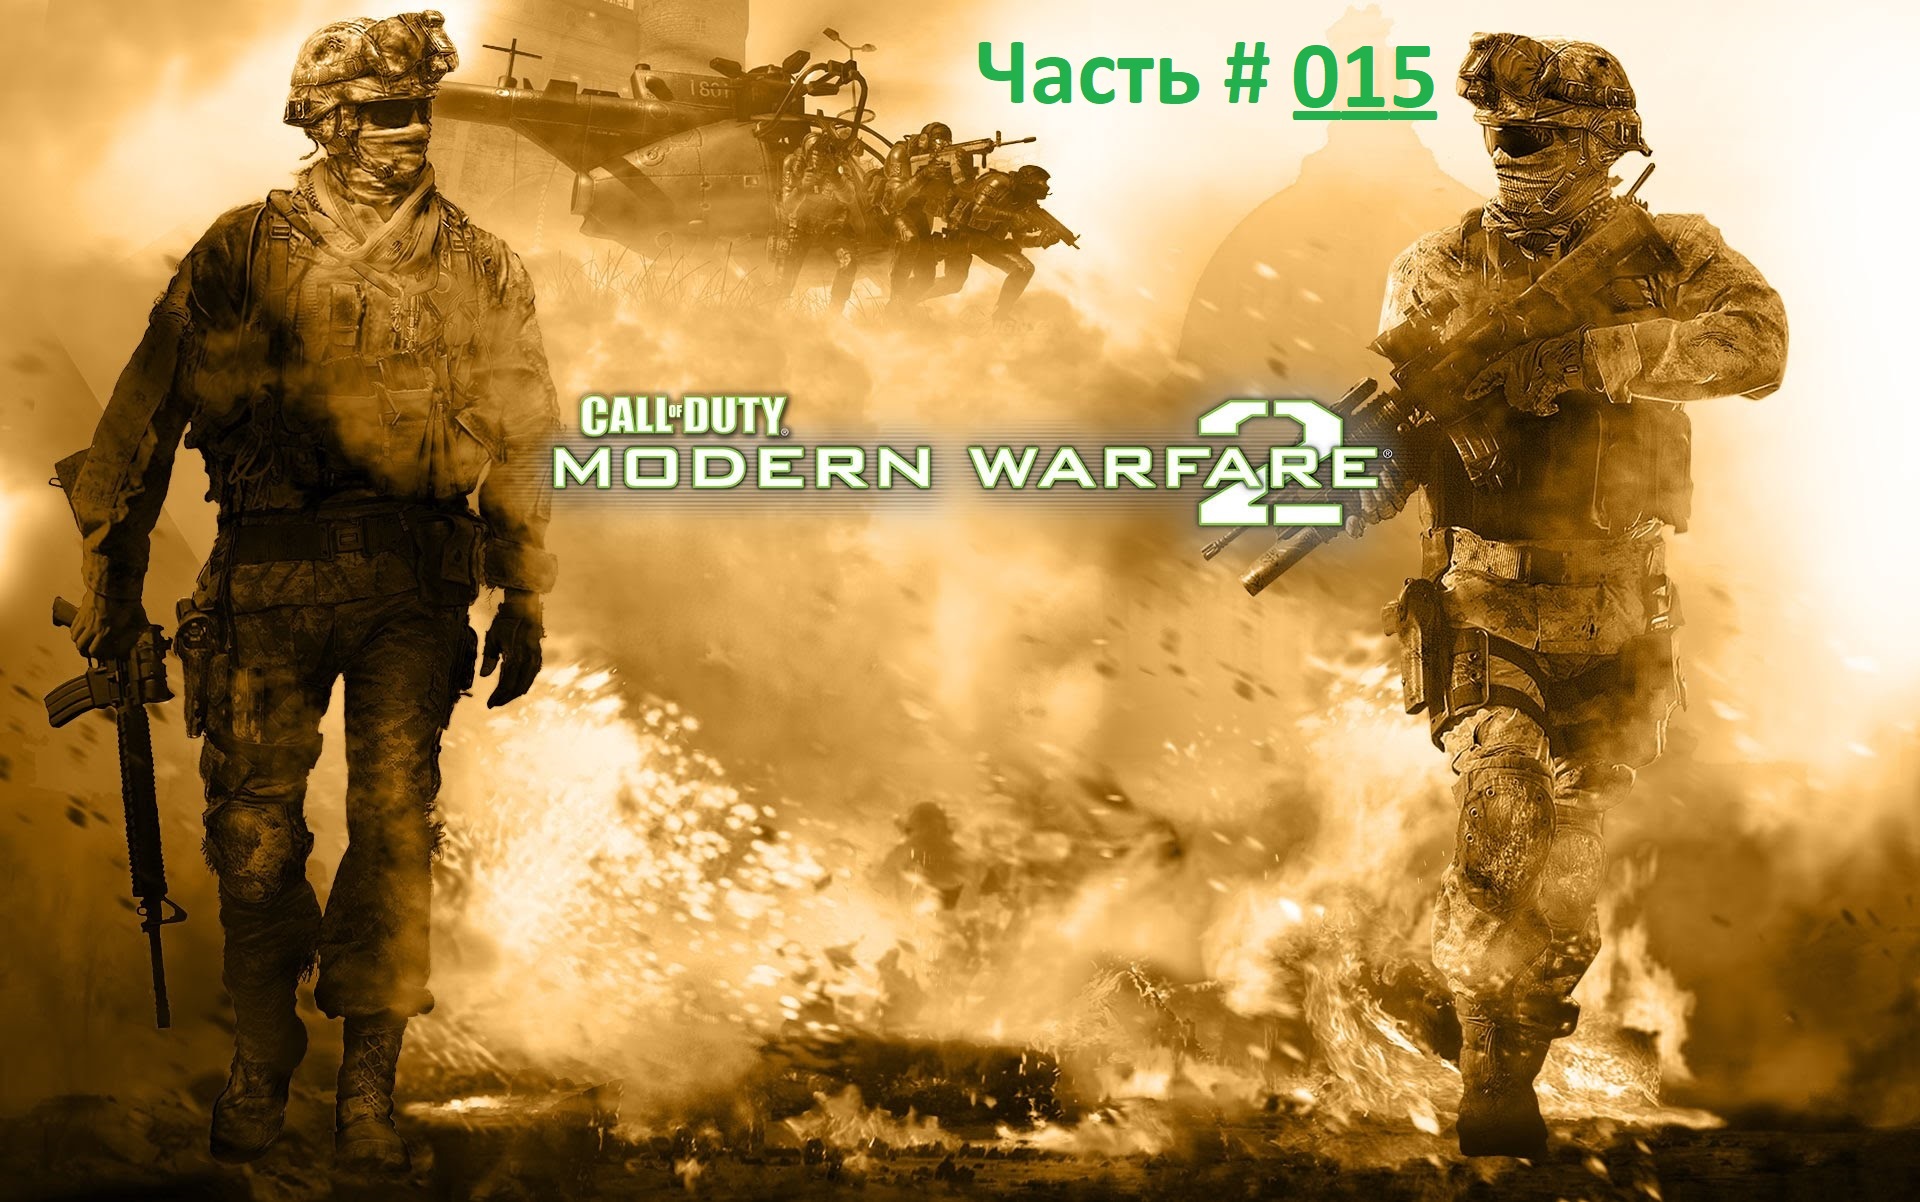 Call of Duty: Modern Warfare 2. Прохождение легендарной игры. Часть 15 / "Враг моего врага"